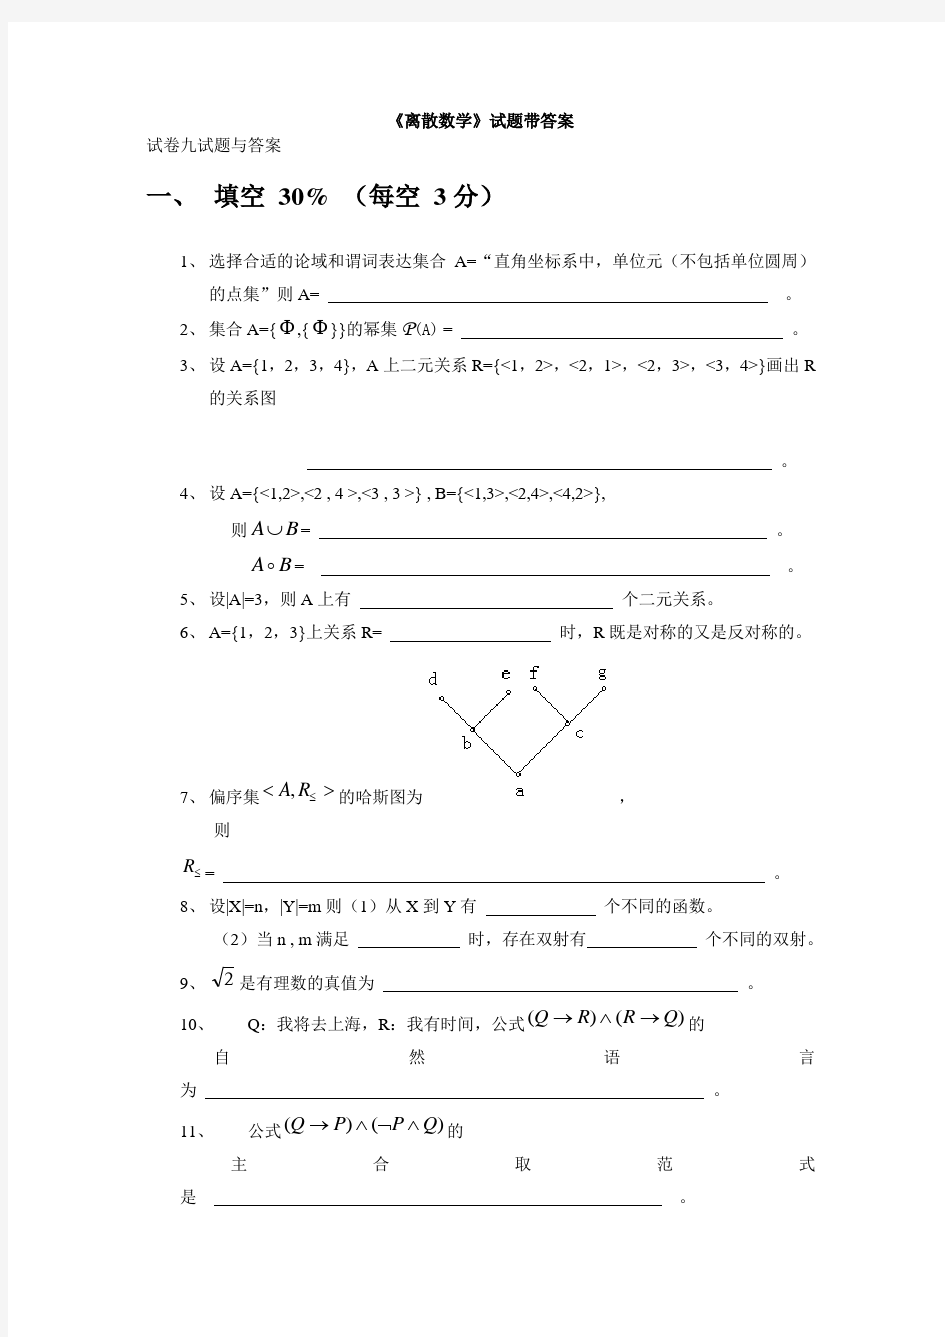 《离散数学》复习练习题带答案(八)